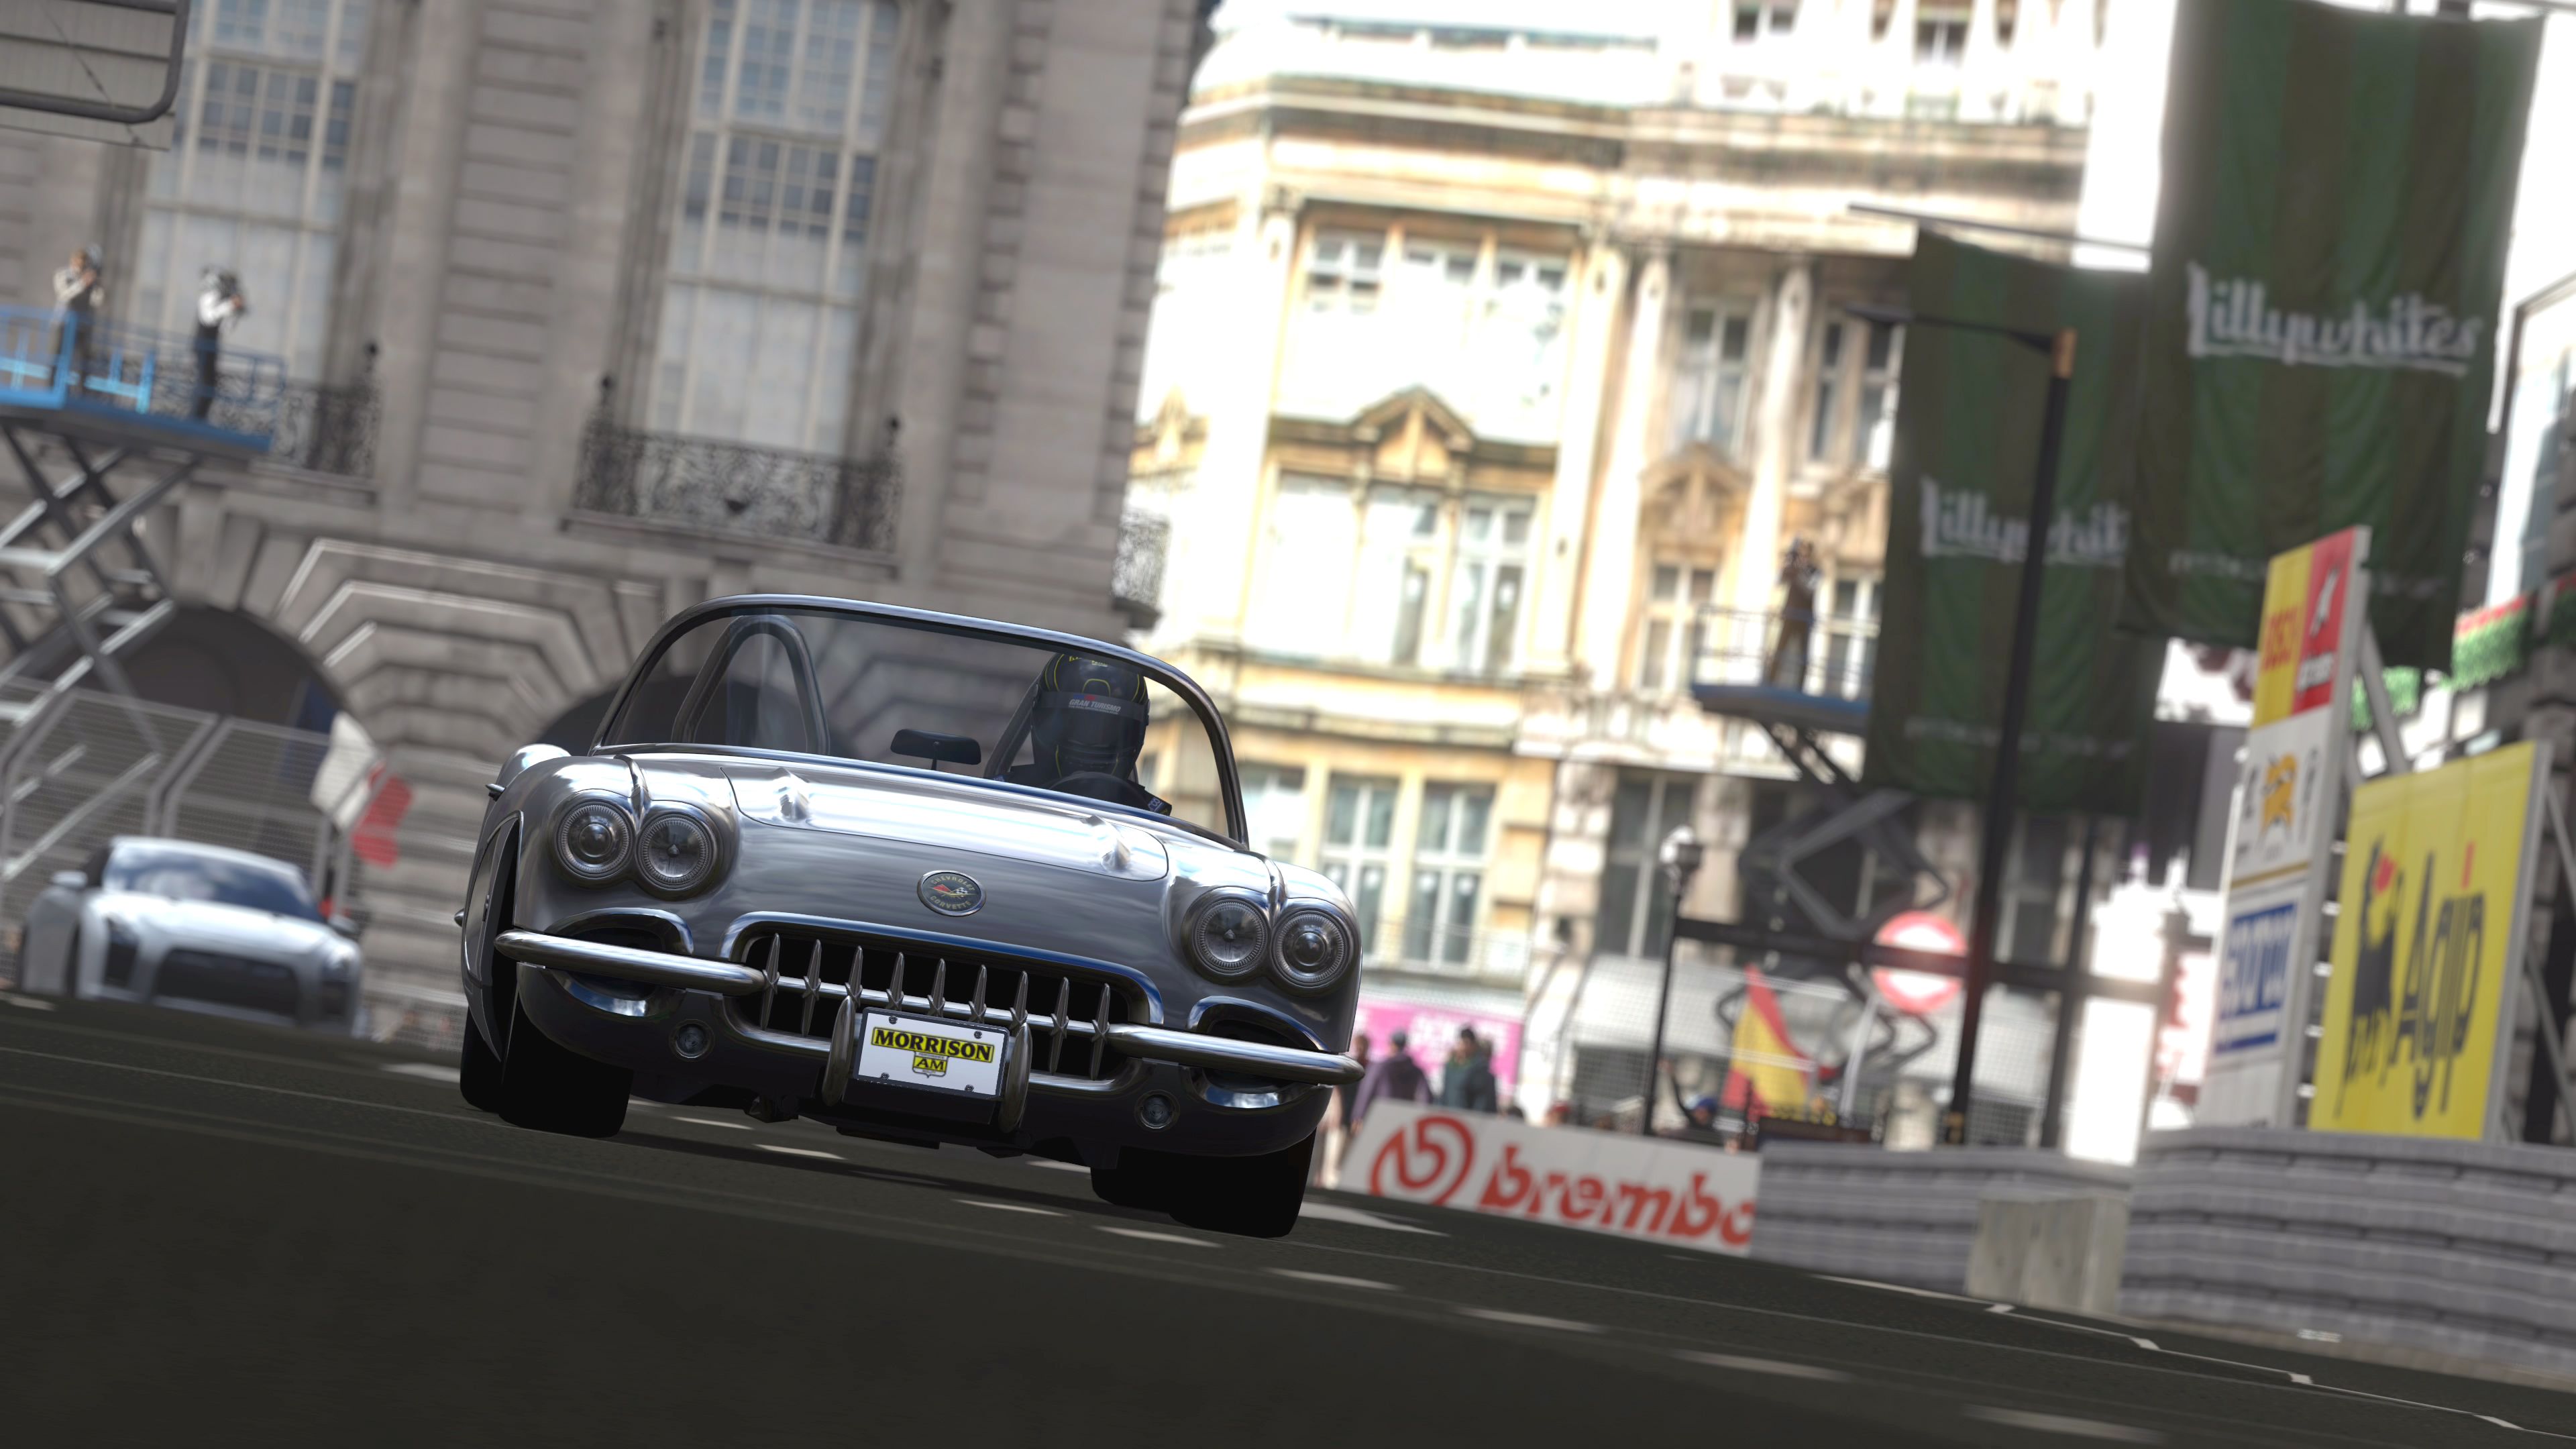 Immagine pubblicata in relazione al seguente contenuto: Gran Turismo 5 Prologue: screenshots, data di lancio e prezzo | Nome immagine: news6711_8.jpg